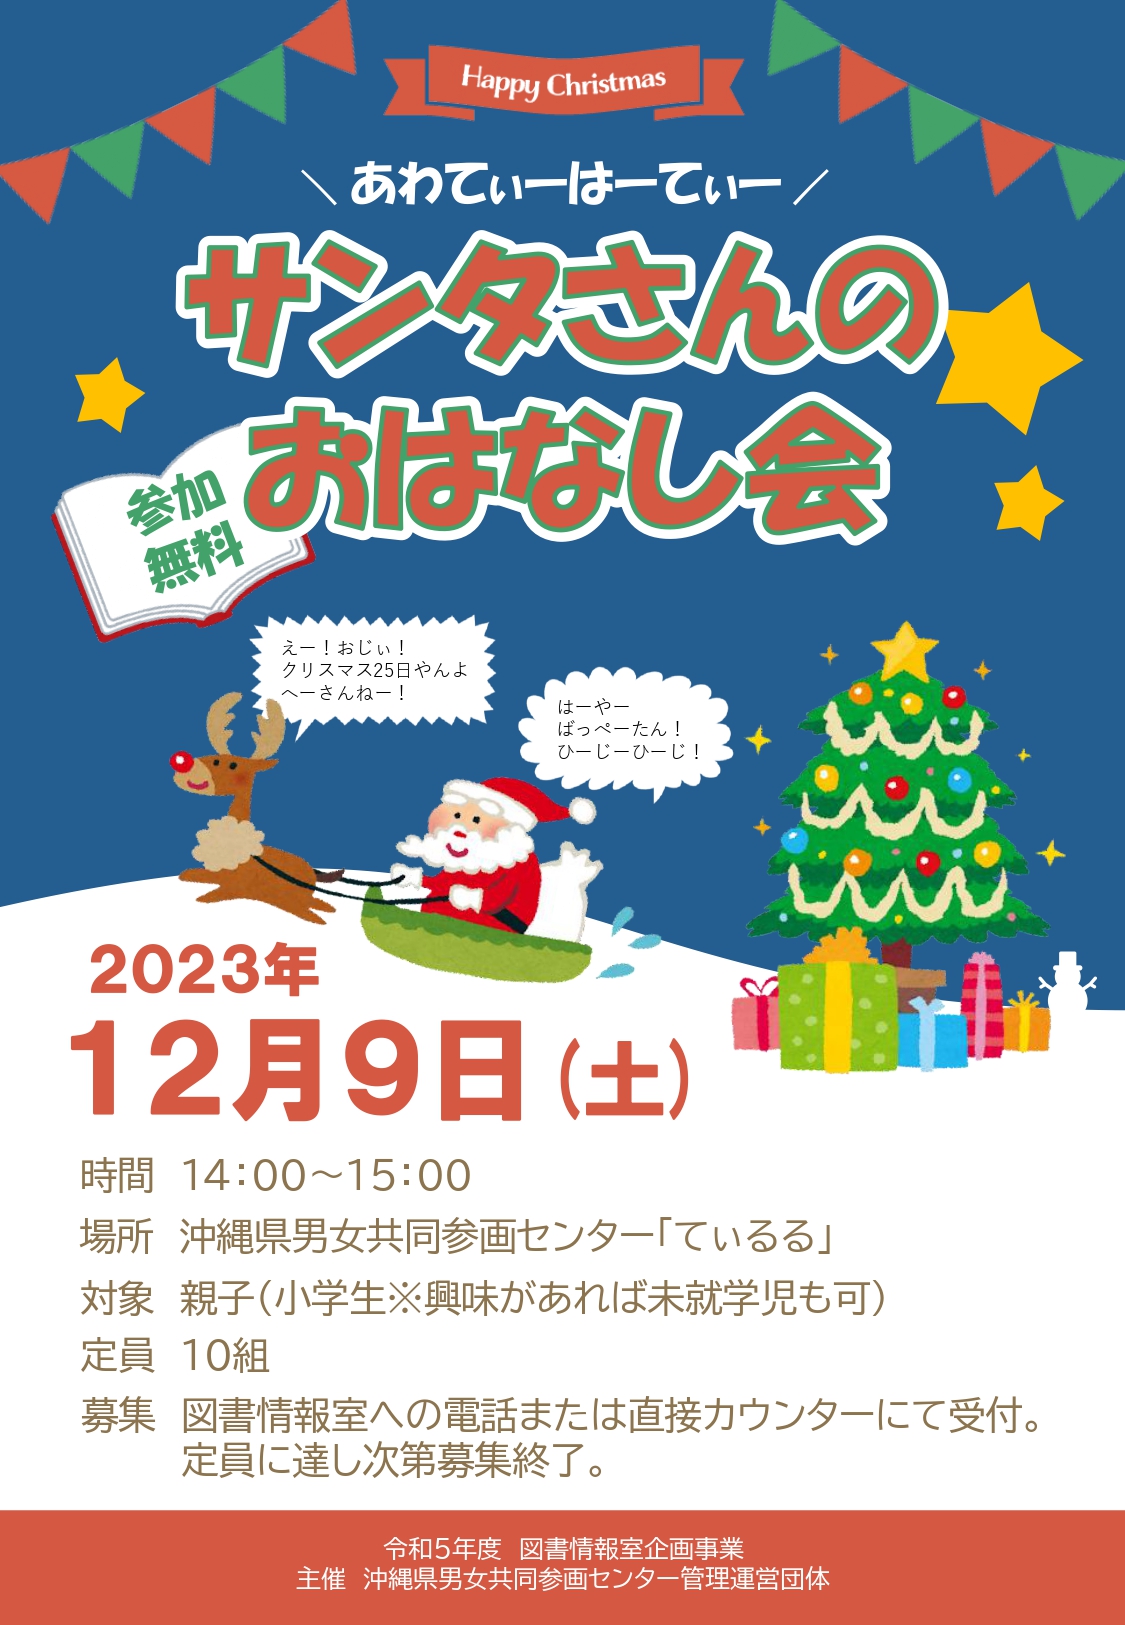 【参加】サンタさんのおはなし会【無料】 (11月 8日)